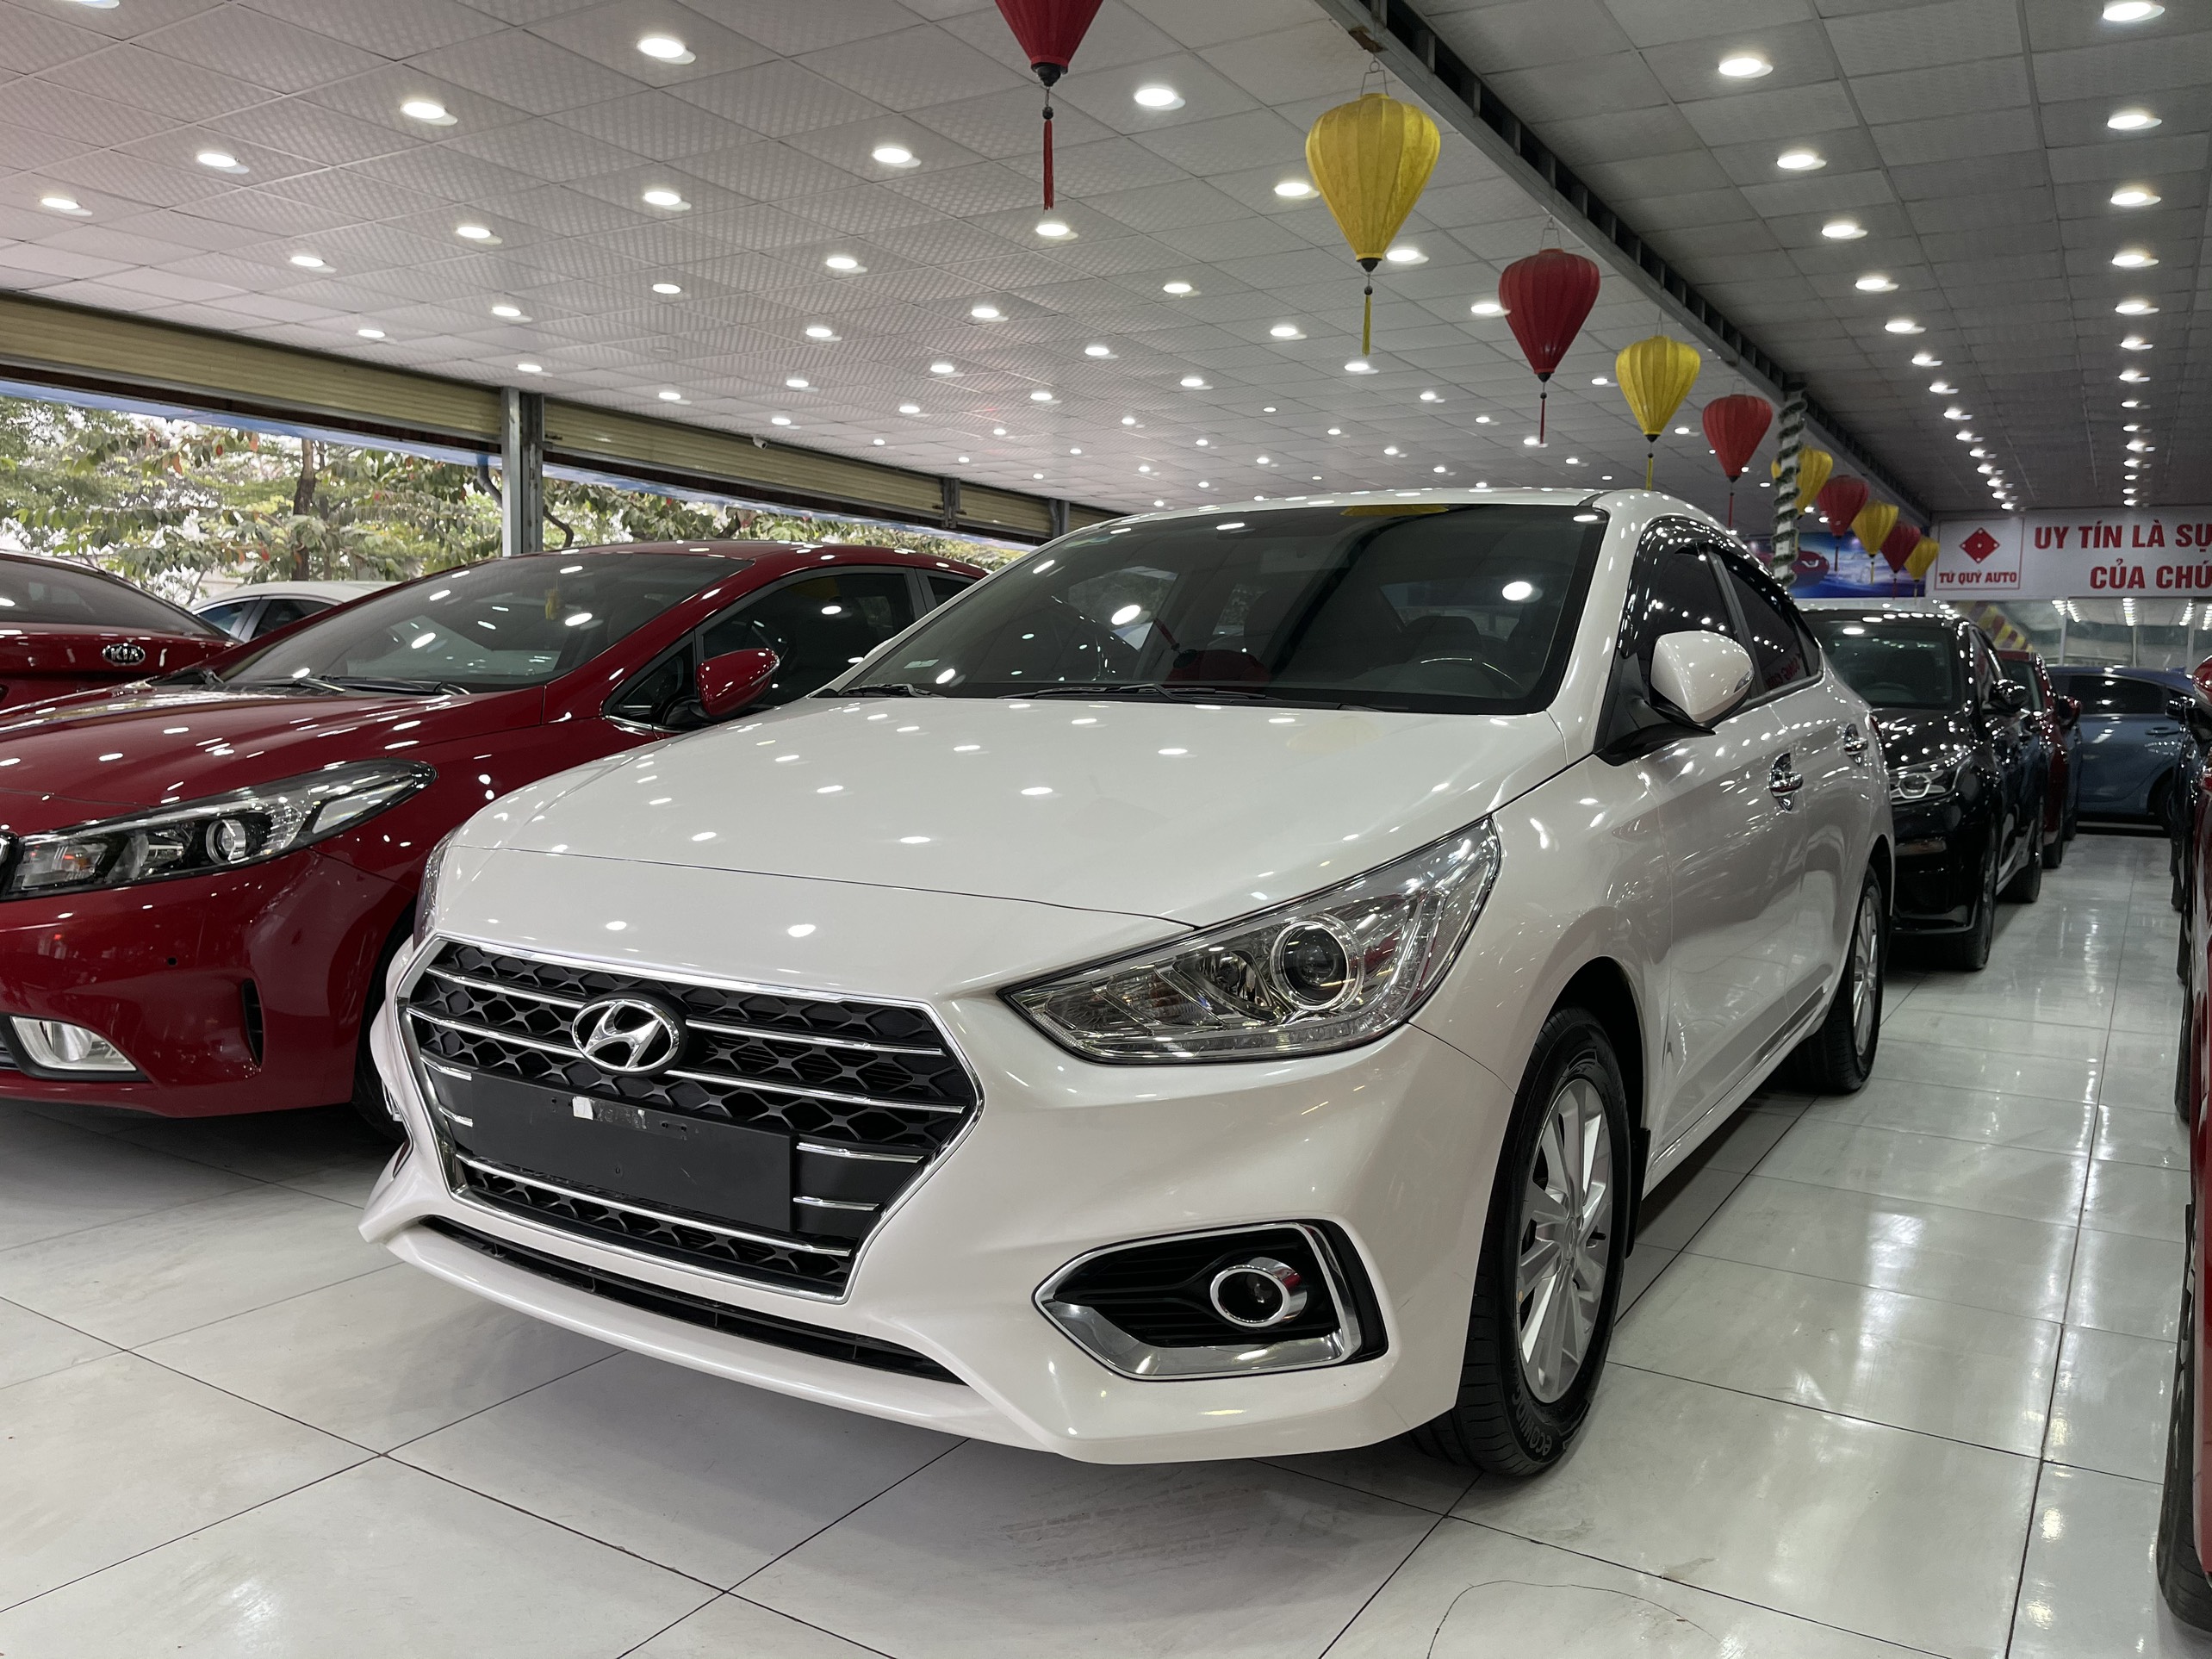 Giá xe Hyundai Accent 2019 tại Bình Phước Dao động từ 4261  5421 triệu  đồng  Hyundai Bình Phước  Hyundai Bình Dương  Hotline 0972974239